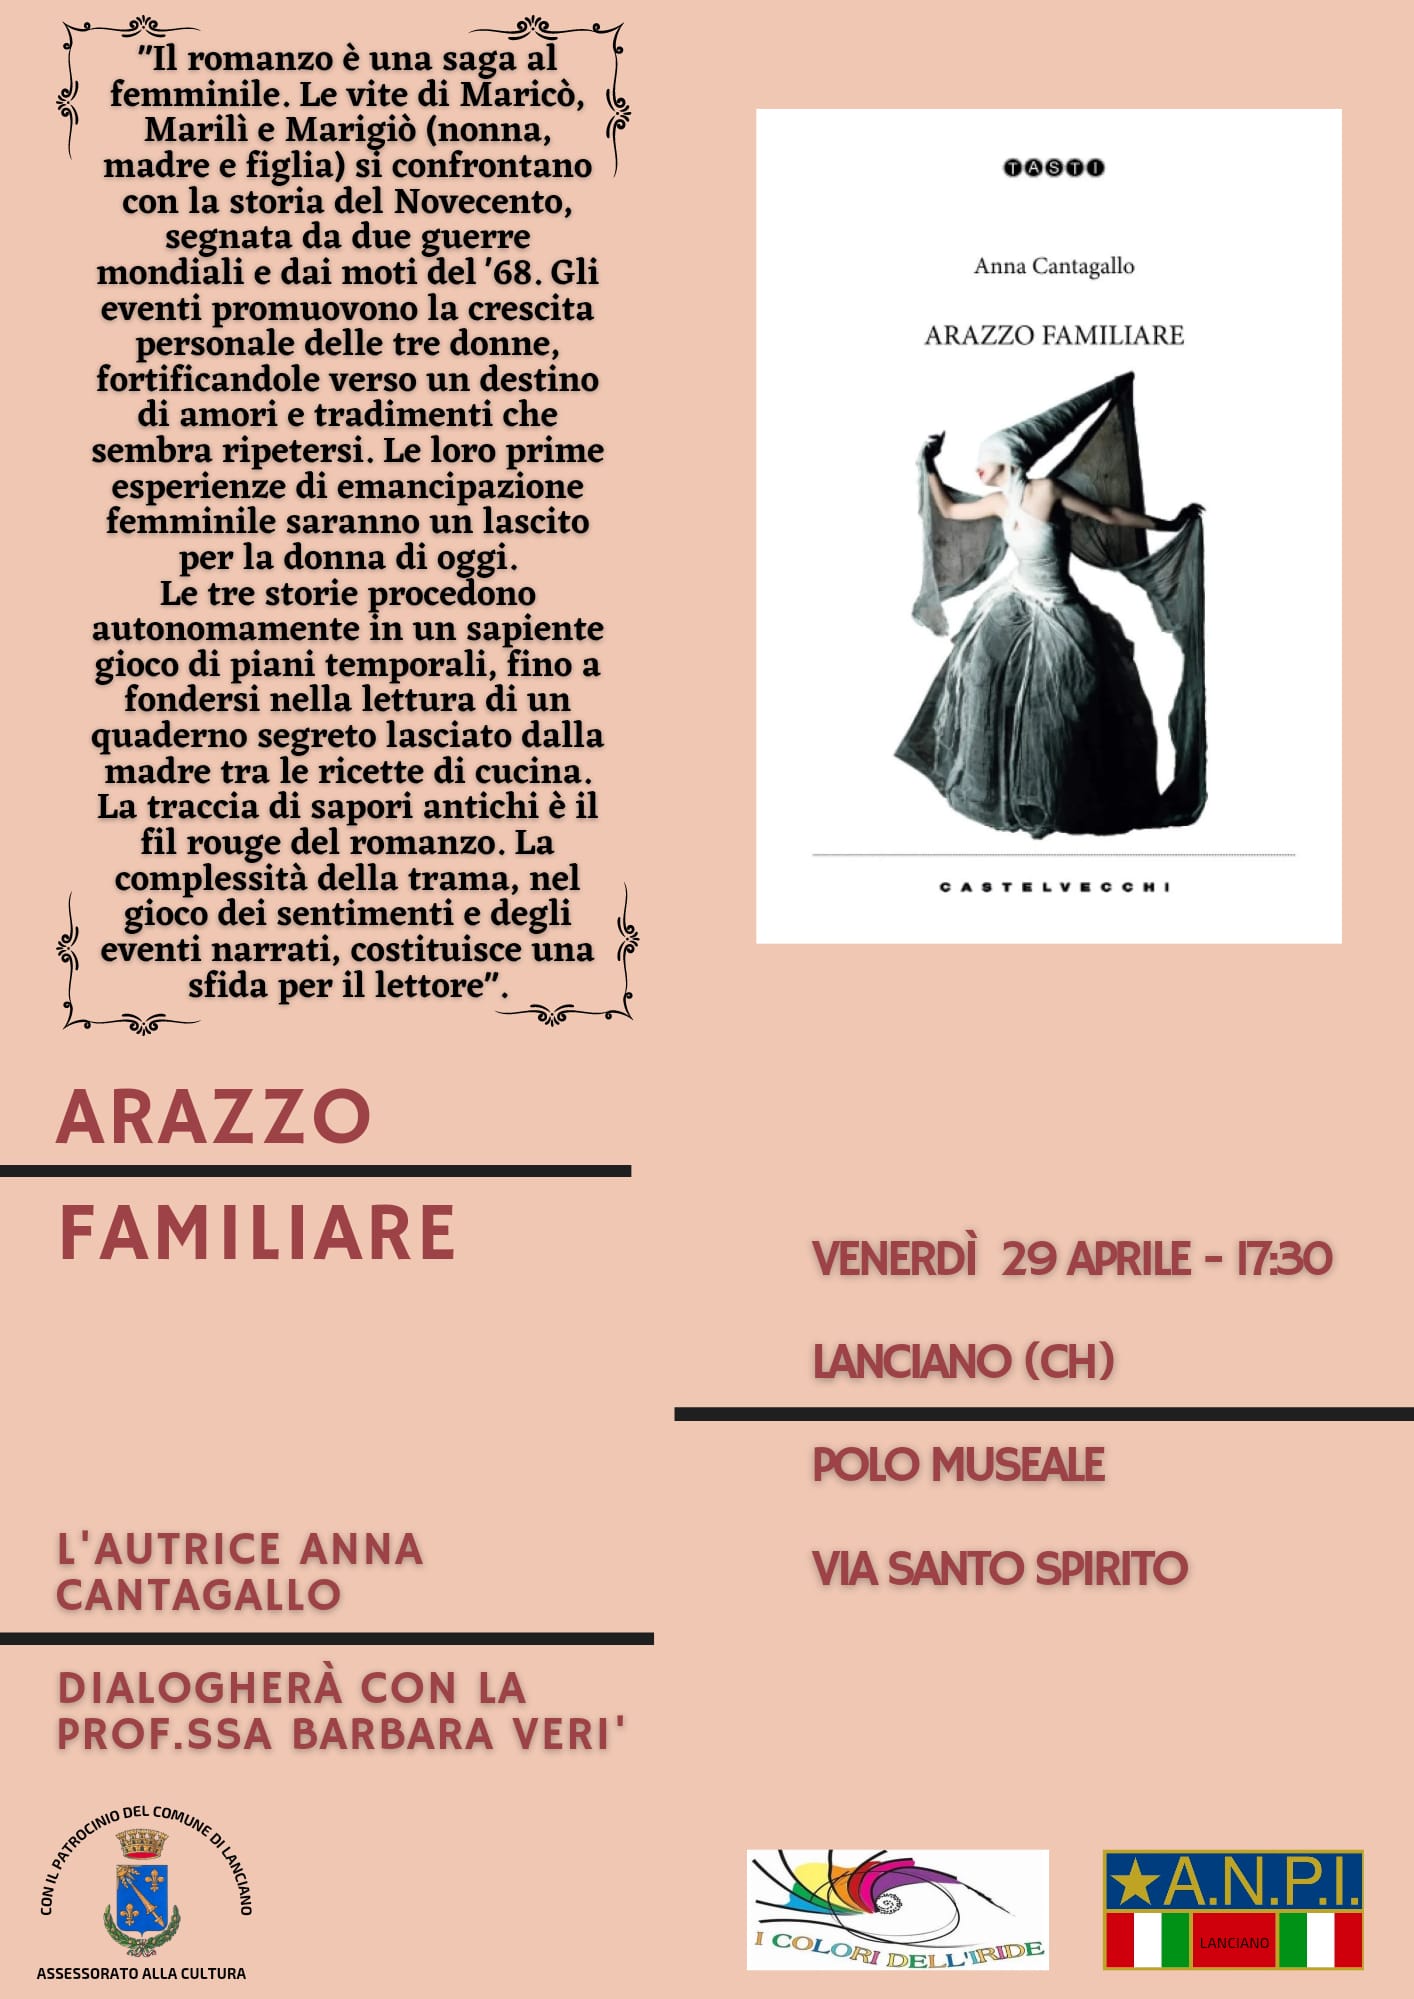 Lanciano, presentazione del libro "Arazzo familiare" di Anna Cantagallo venerdì 29 aprile al Polo Museale, alle 17,30.